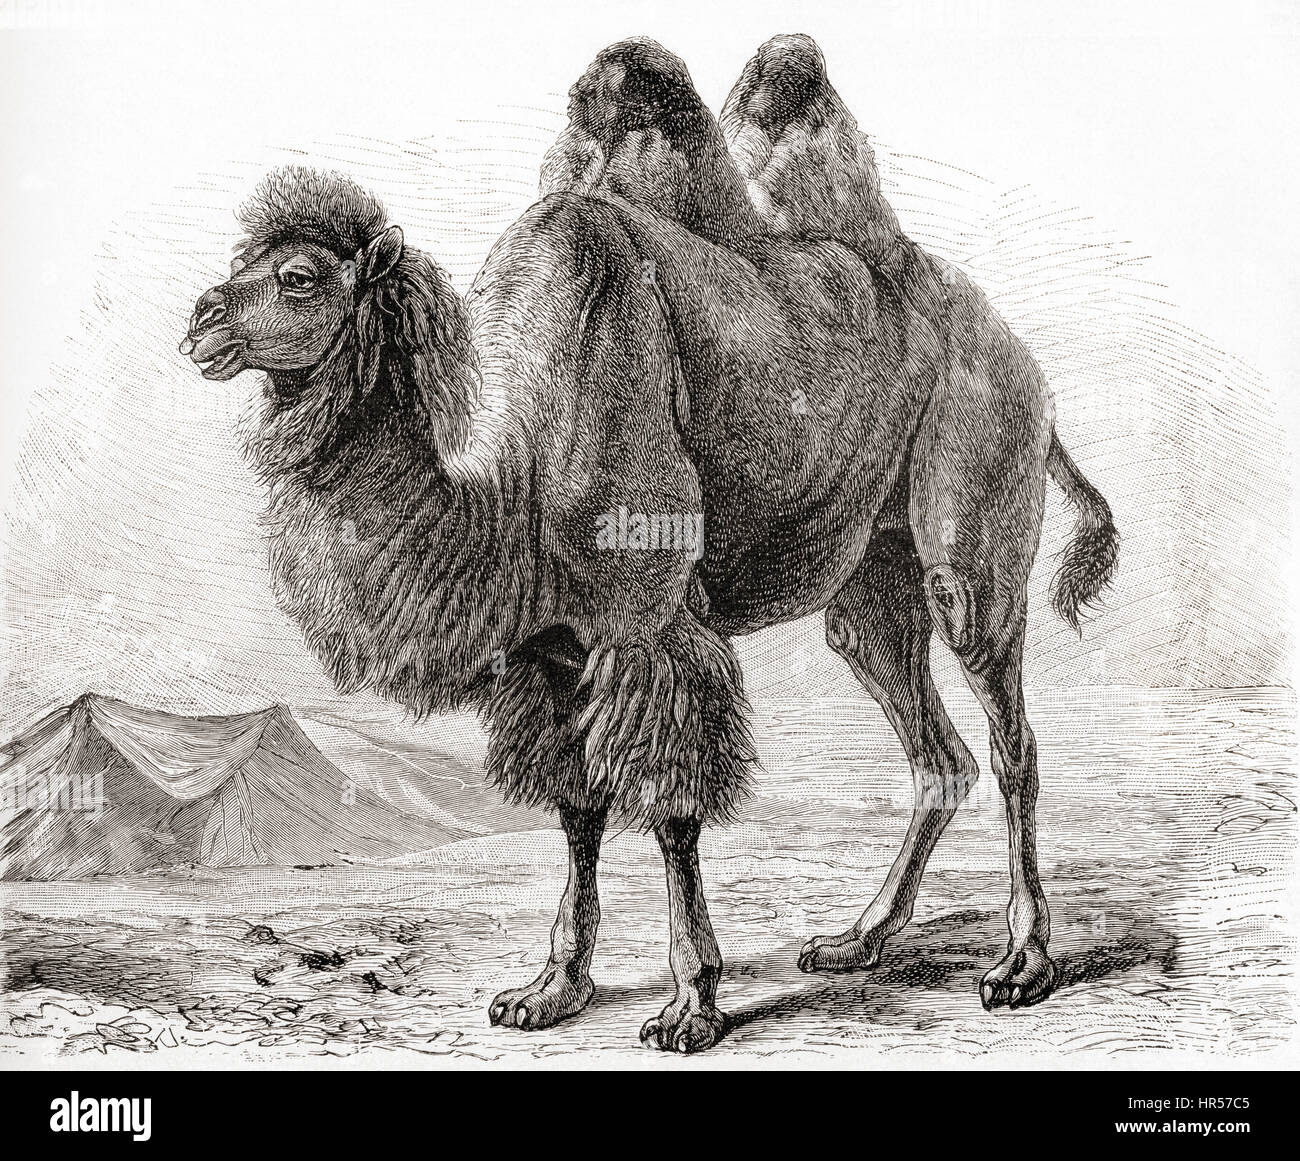 Un cammello Bactrian (Camelus bactrianus) un grande anche-toed ungulato nativa per le steppe dell'Asia centrale. Da Meyers lessico, pubblicato nel 1927. Foto Stock